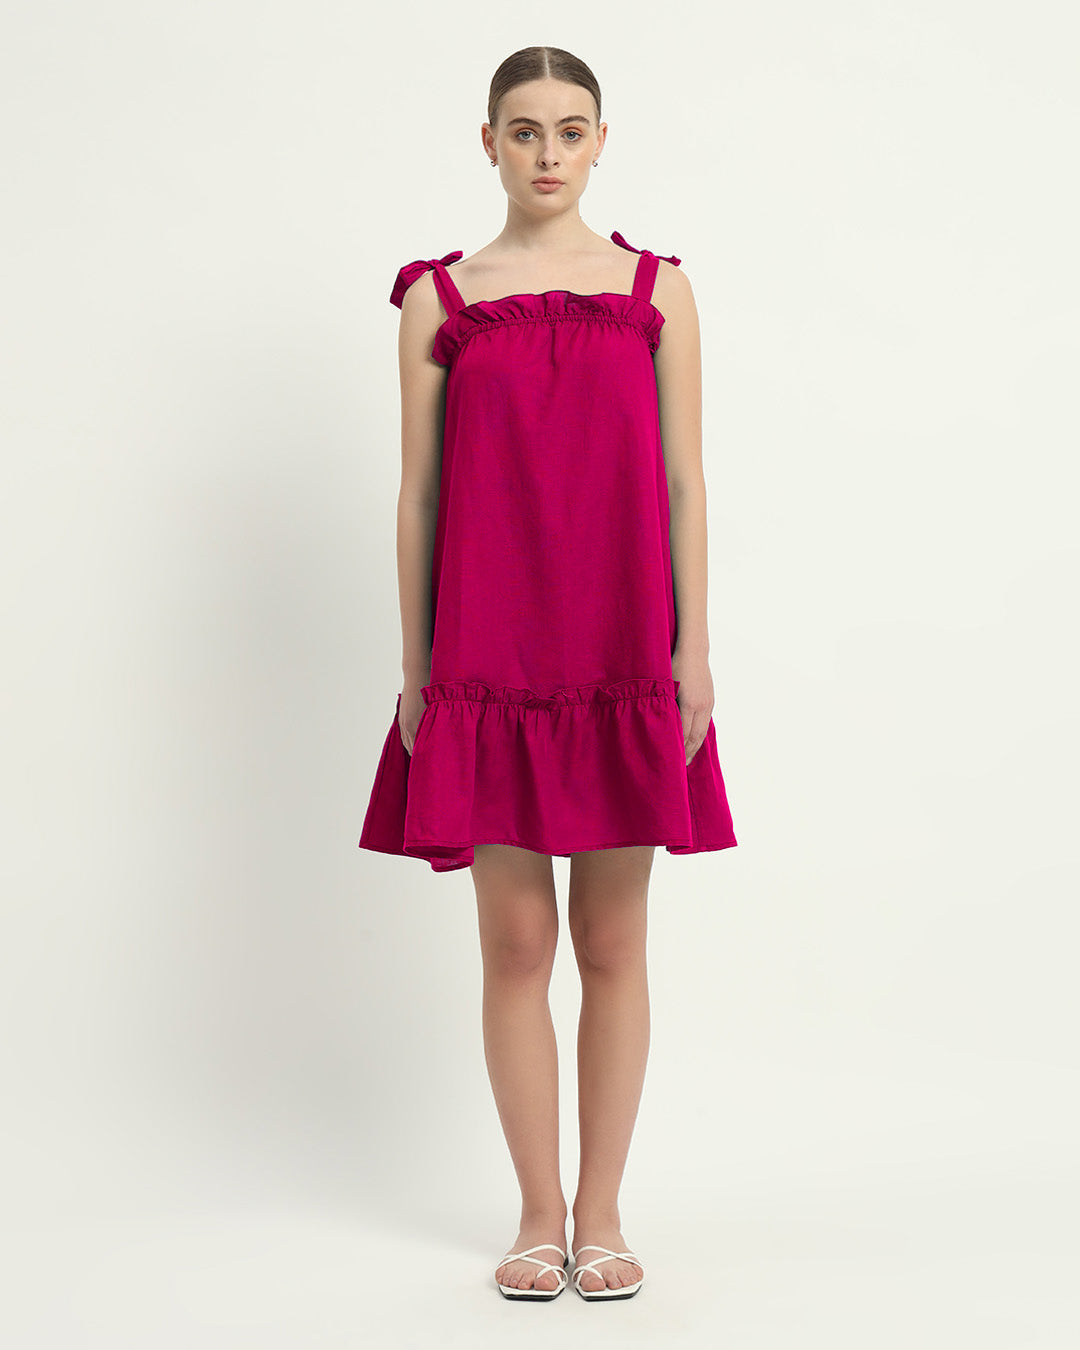 The Amalfi Berry Cotton Dress